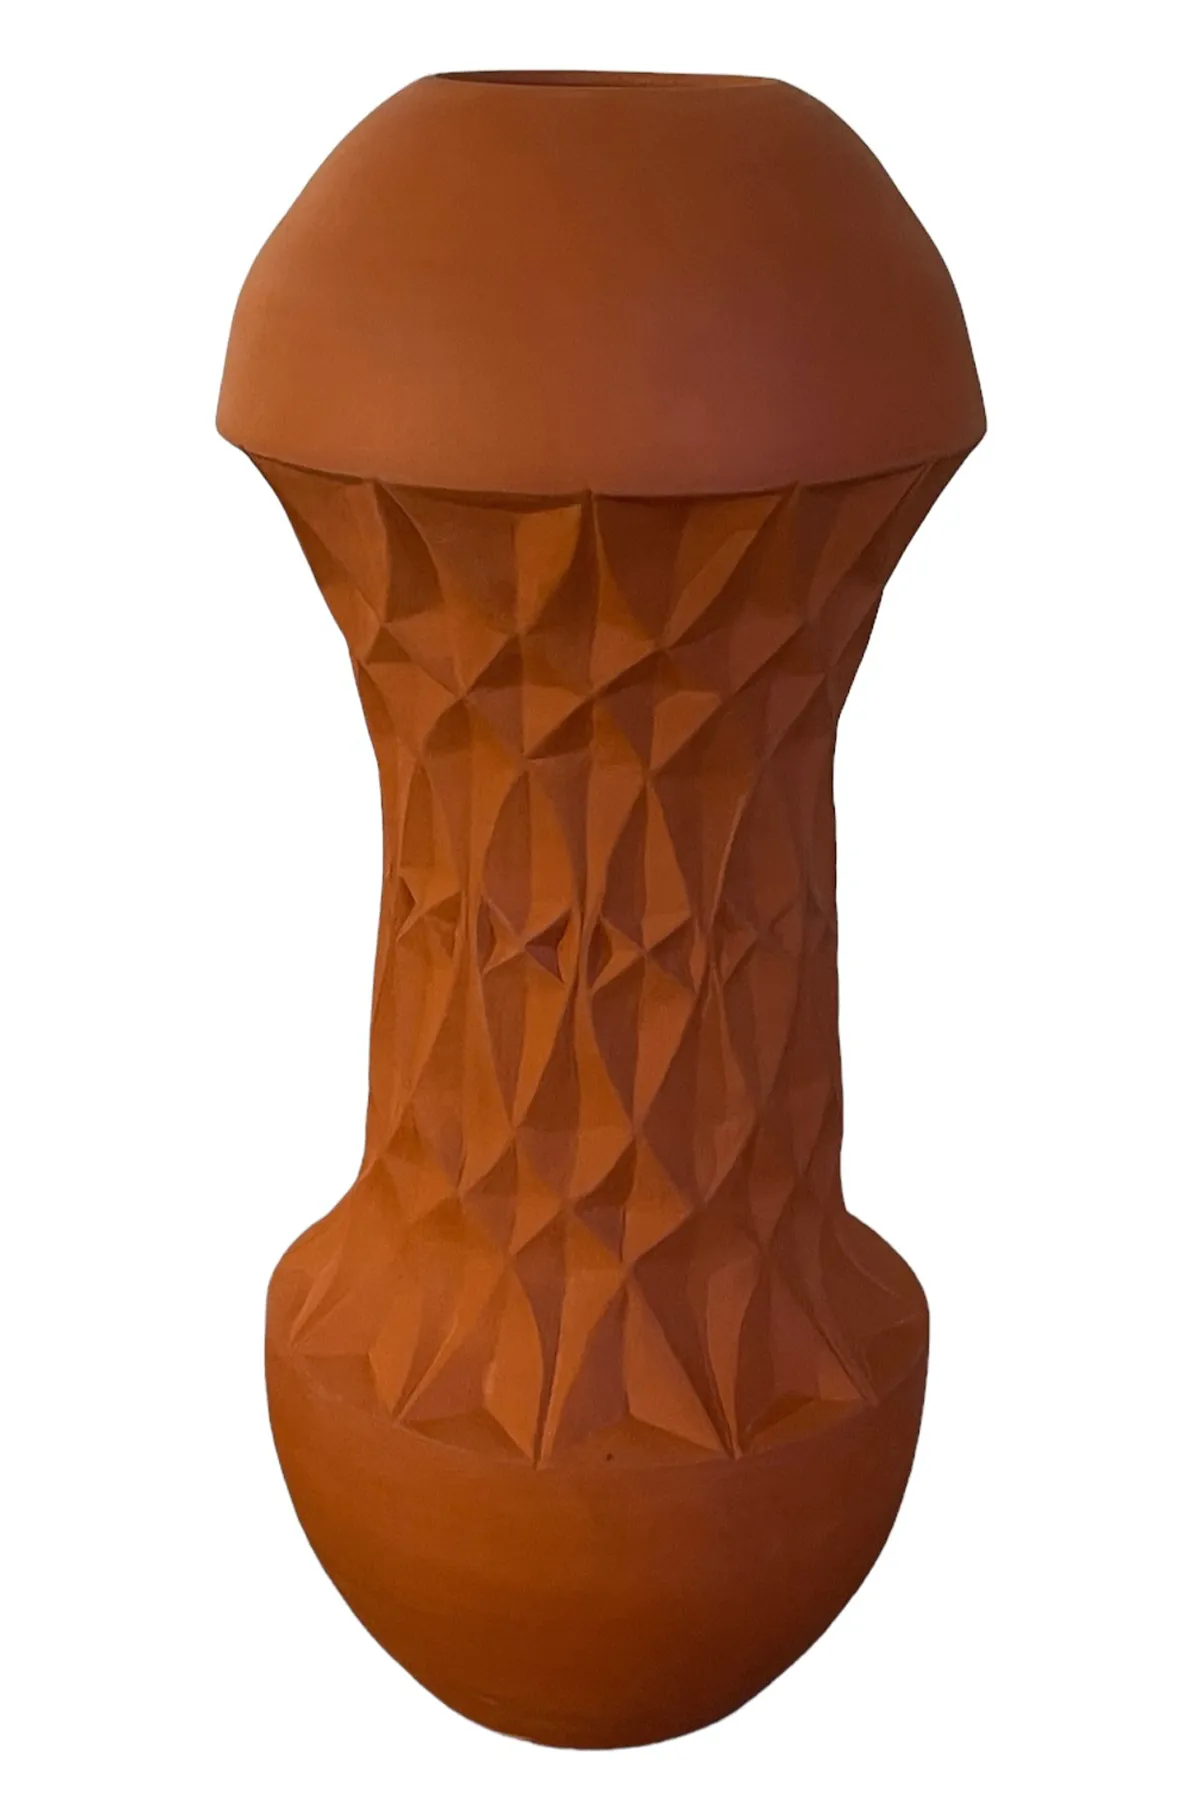 Imagination Vase. Diese in der Raku-Technik handgefertigte Keramikvase weist eine Form auf, die an die beeindruckende Architektur des Nahen Ostens erinnert. Hamburg, Middleway Gallery, Online Shop